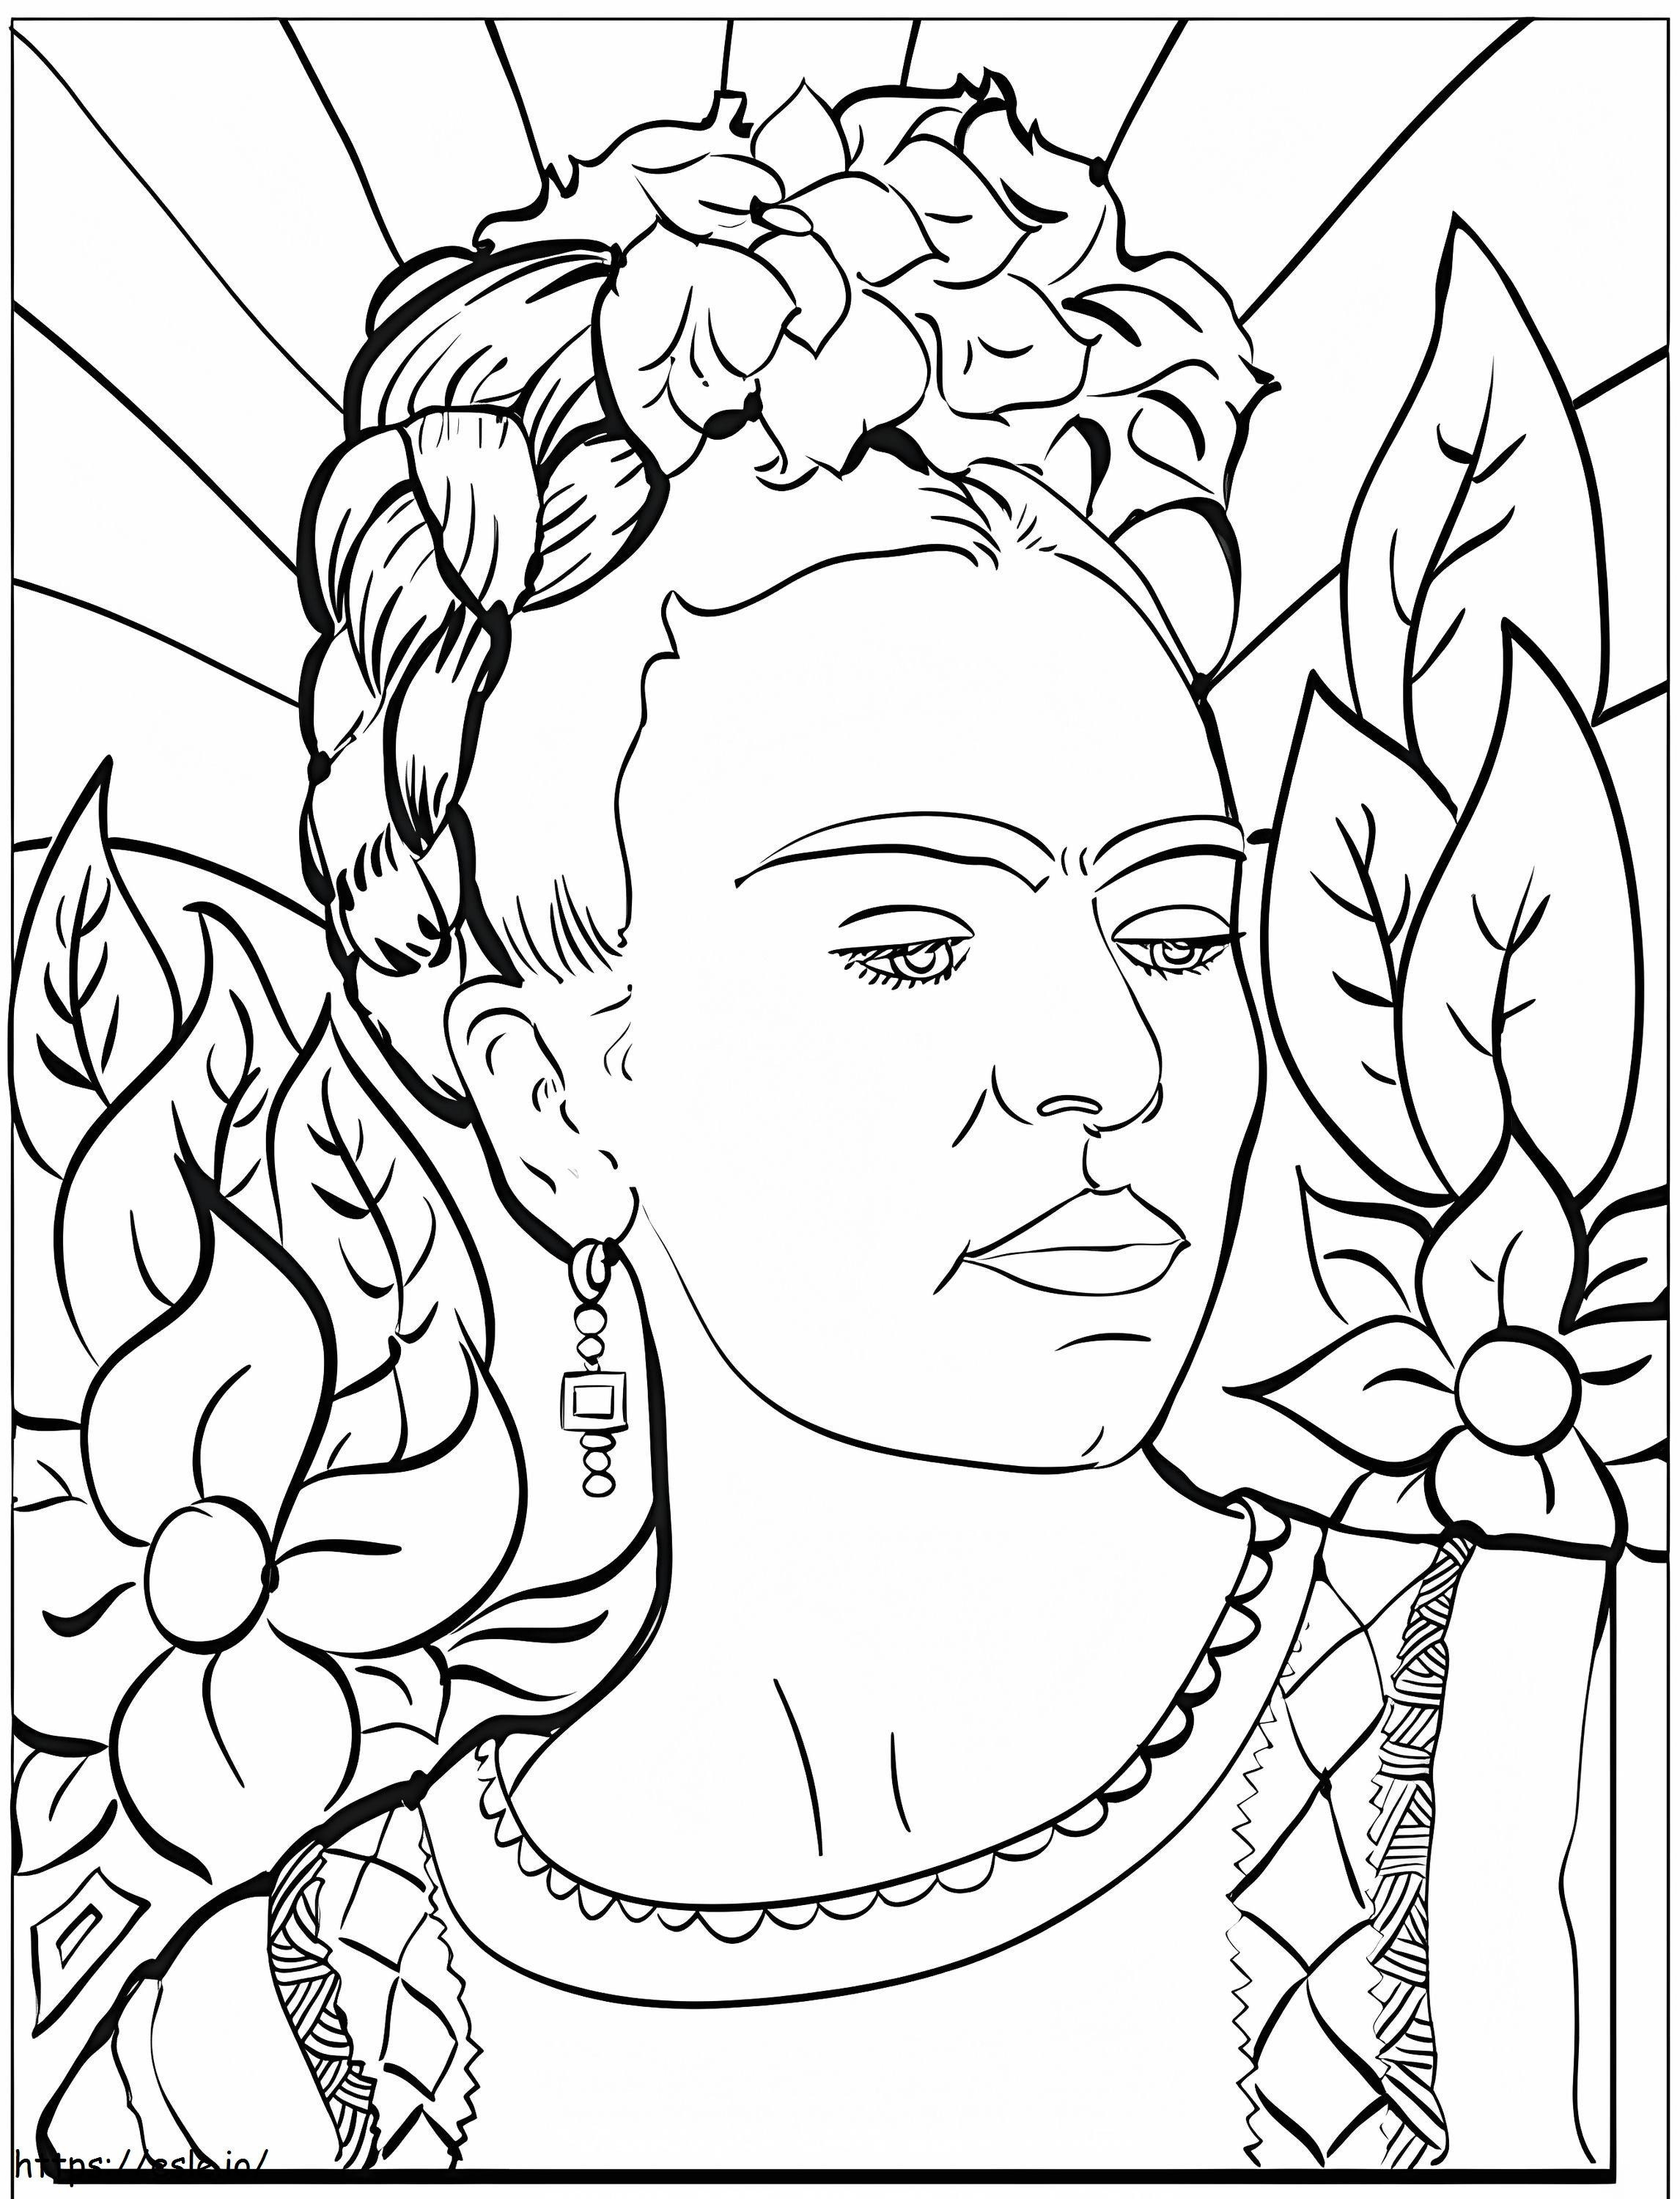 Imprimible Frida Kahlo para colorear